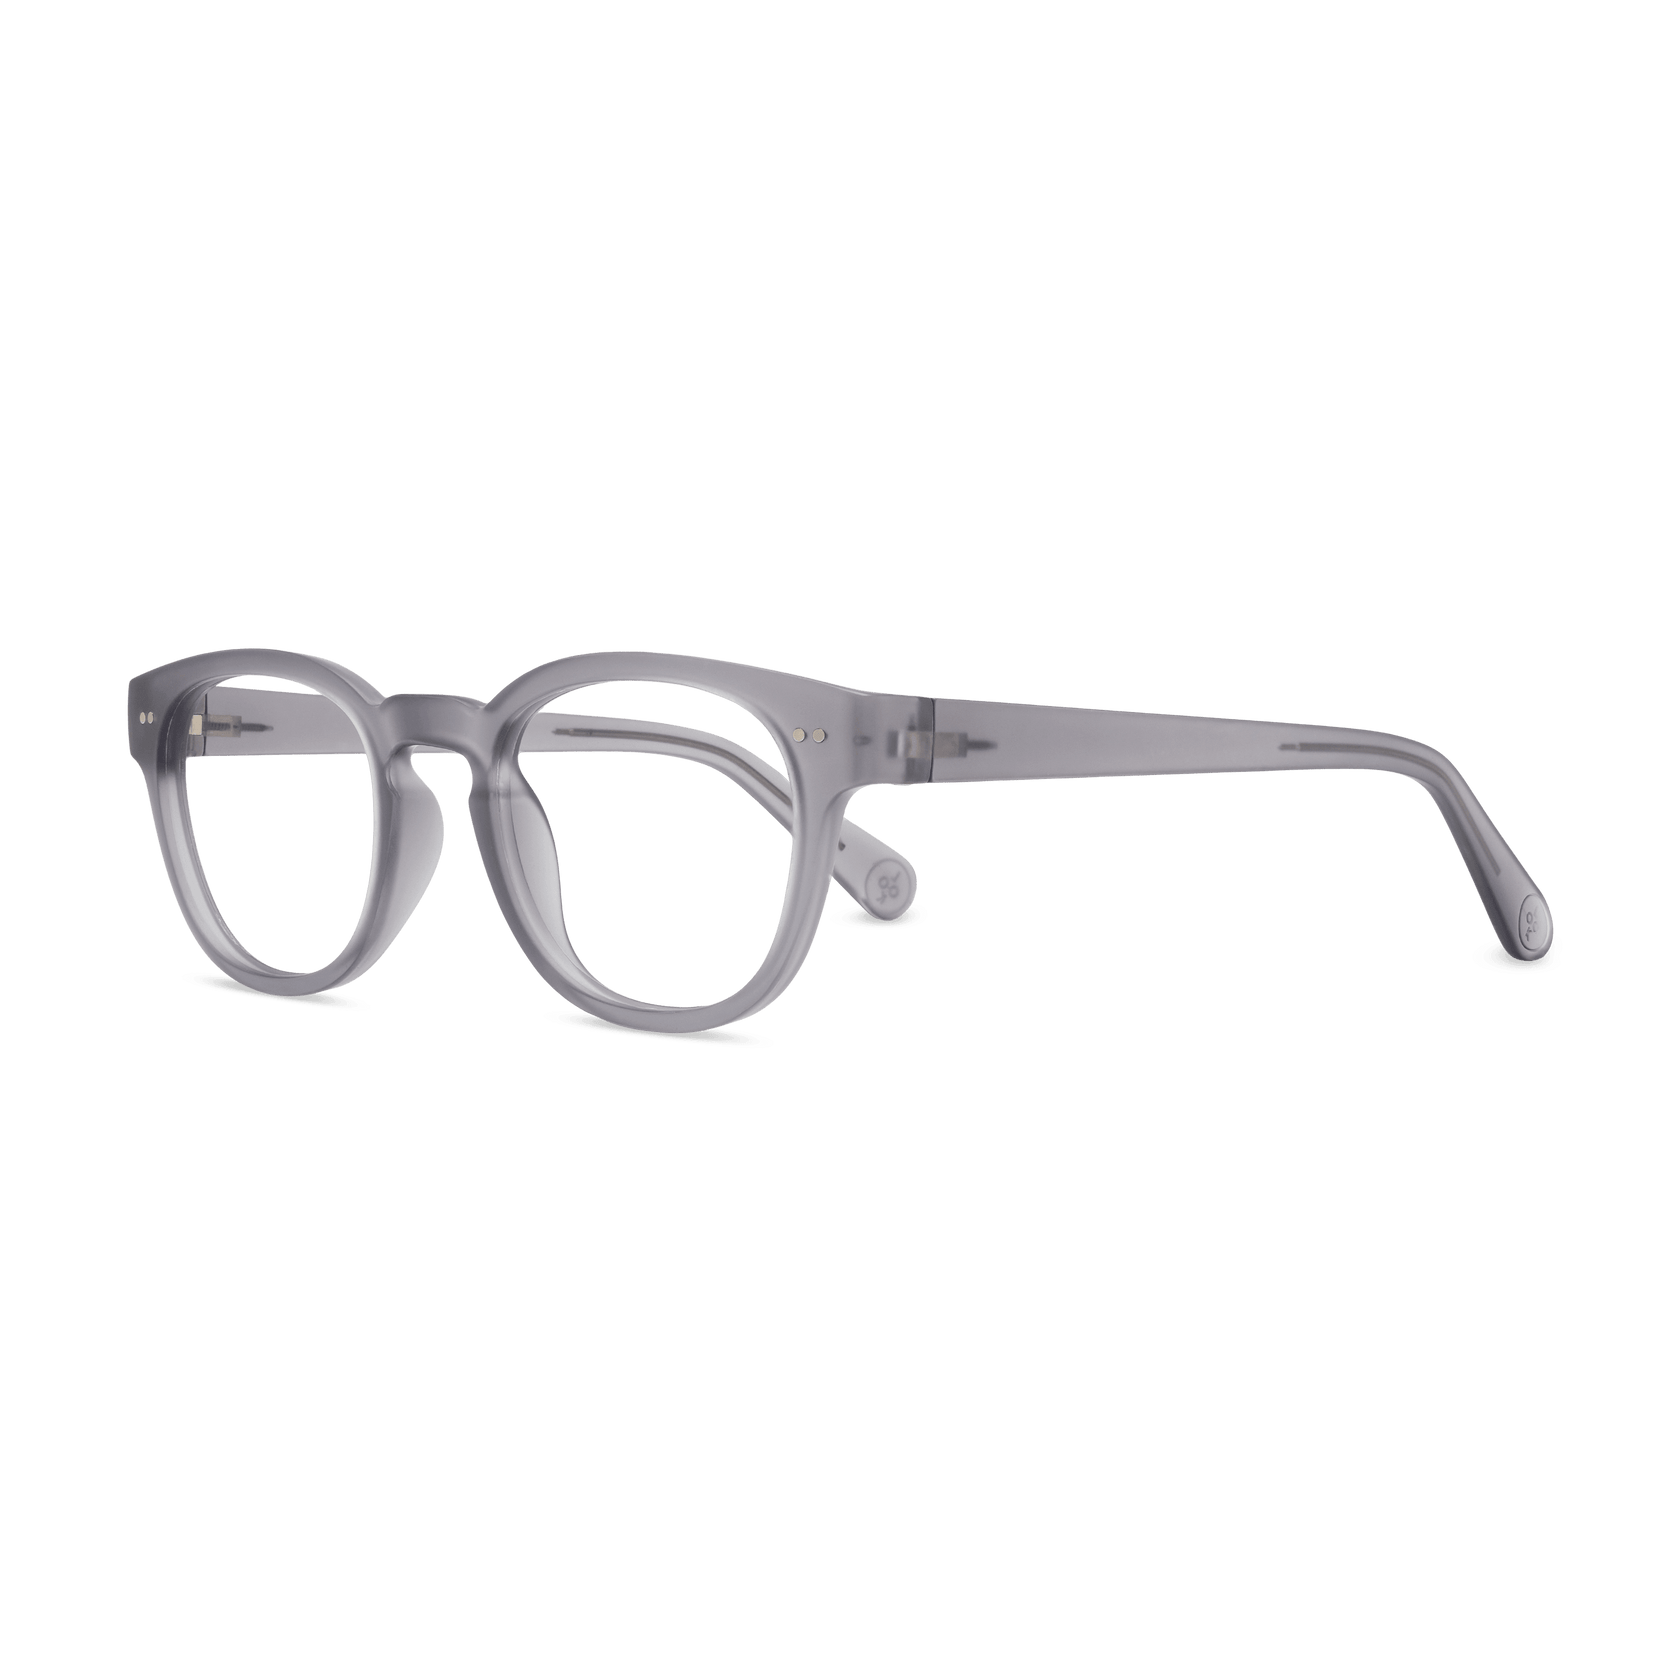 Stylish Reading Glasses: Casper | LOOK OPTIC